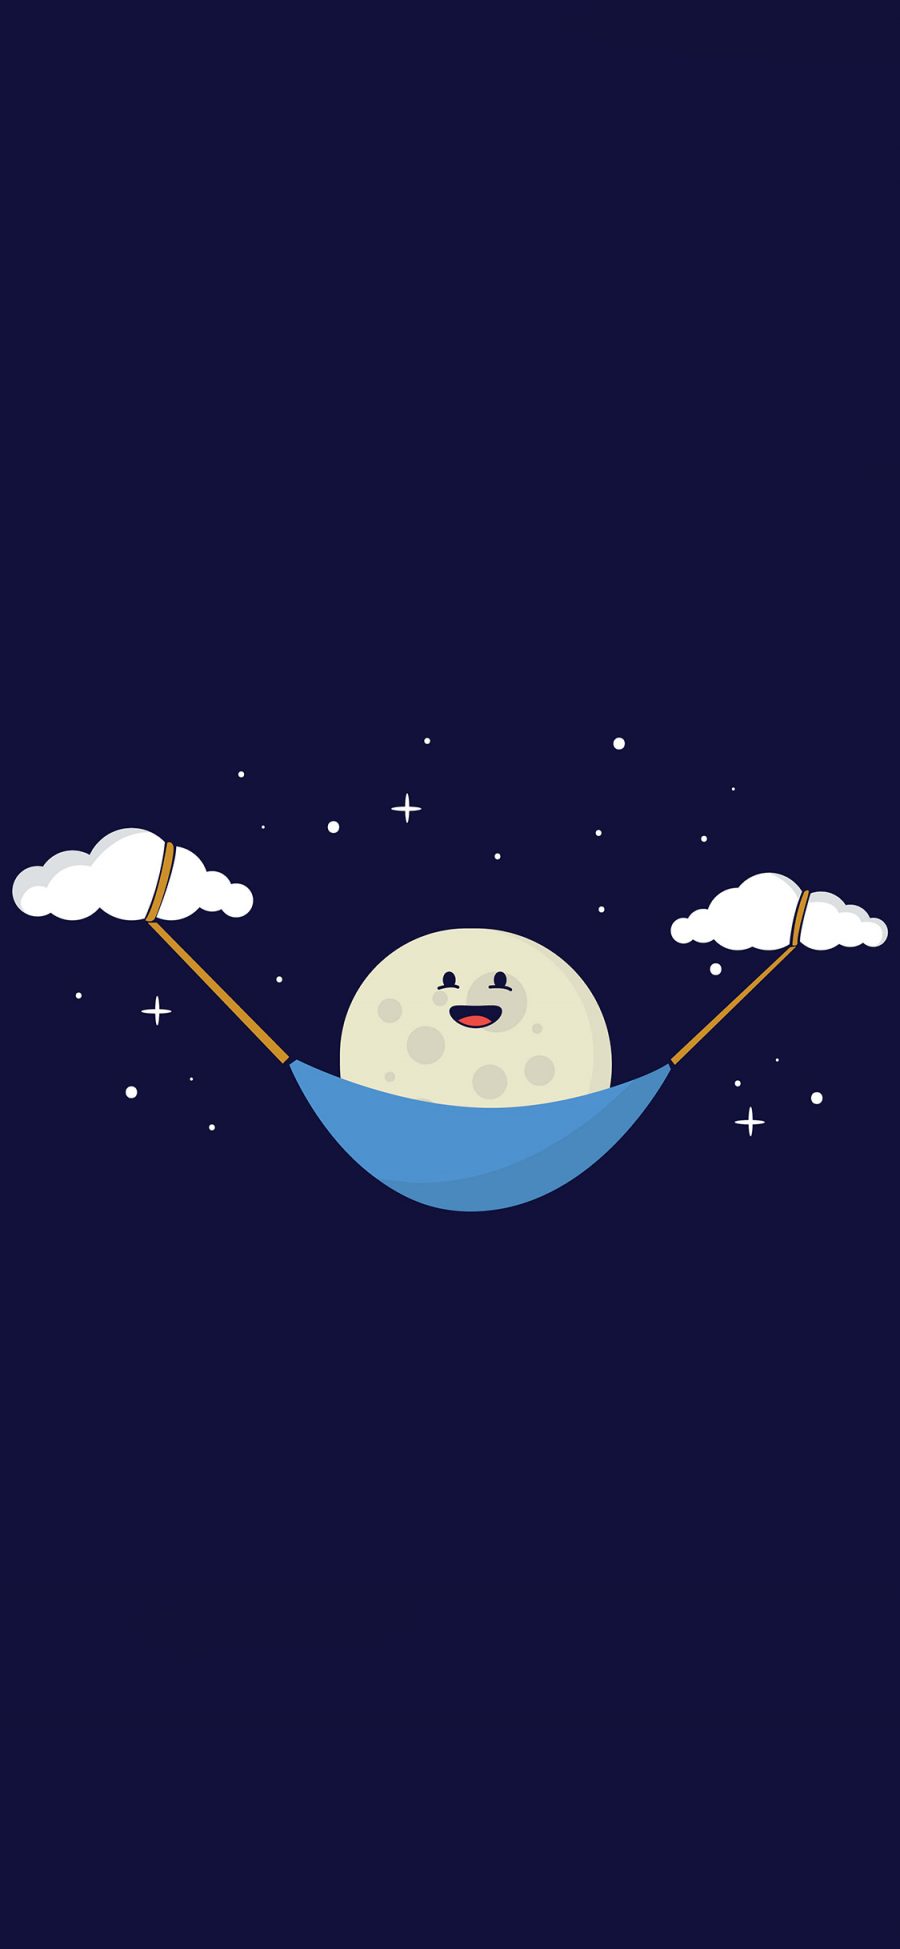 [2436×1125]趣味 云朵 夜晚 月球 苹果手机动漫壁纸图片